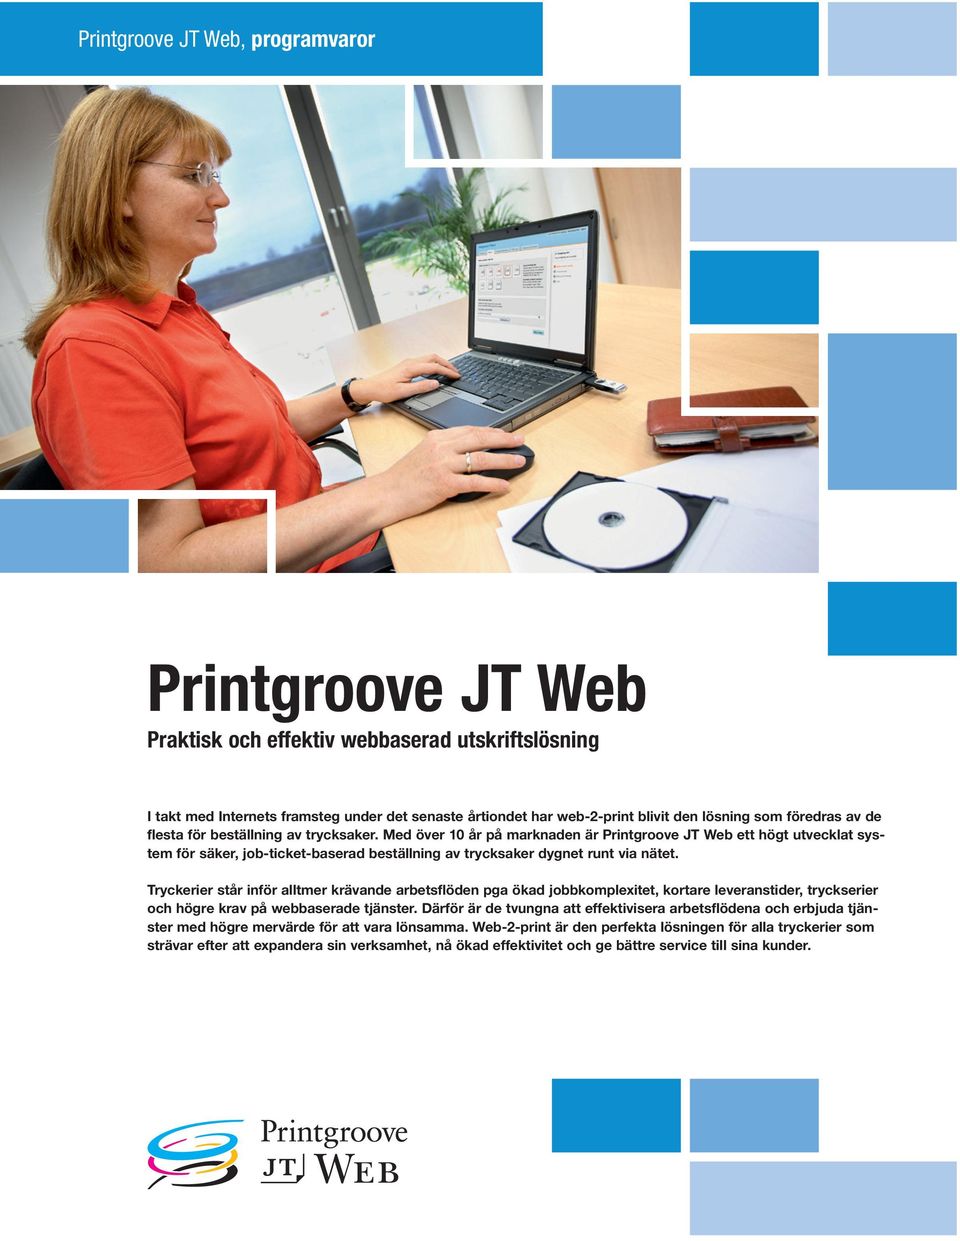 Med över 10 år på marknaden är Printgroove JT Web ett högt utvecklat system för säker, job-ticket-baserad beställning av trycksaker dygnet runt via nätet.